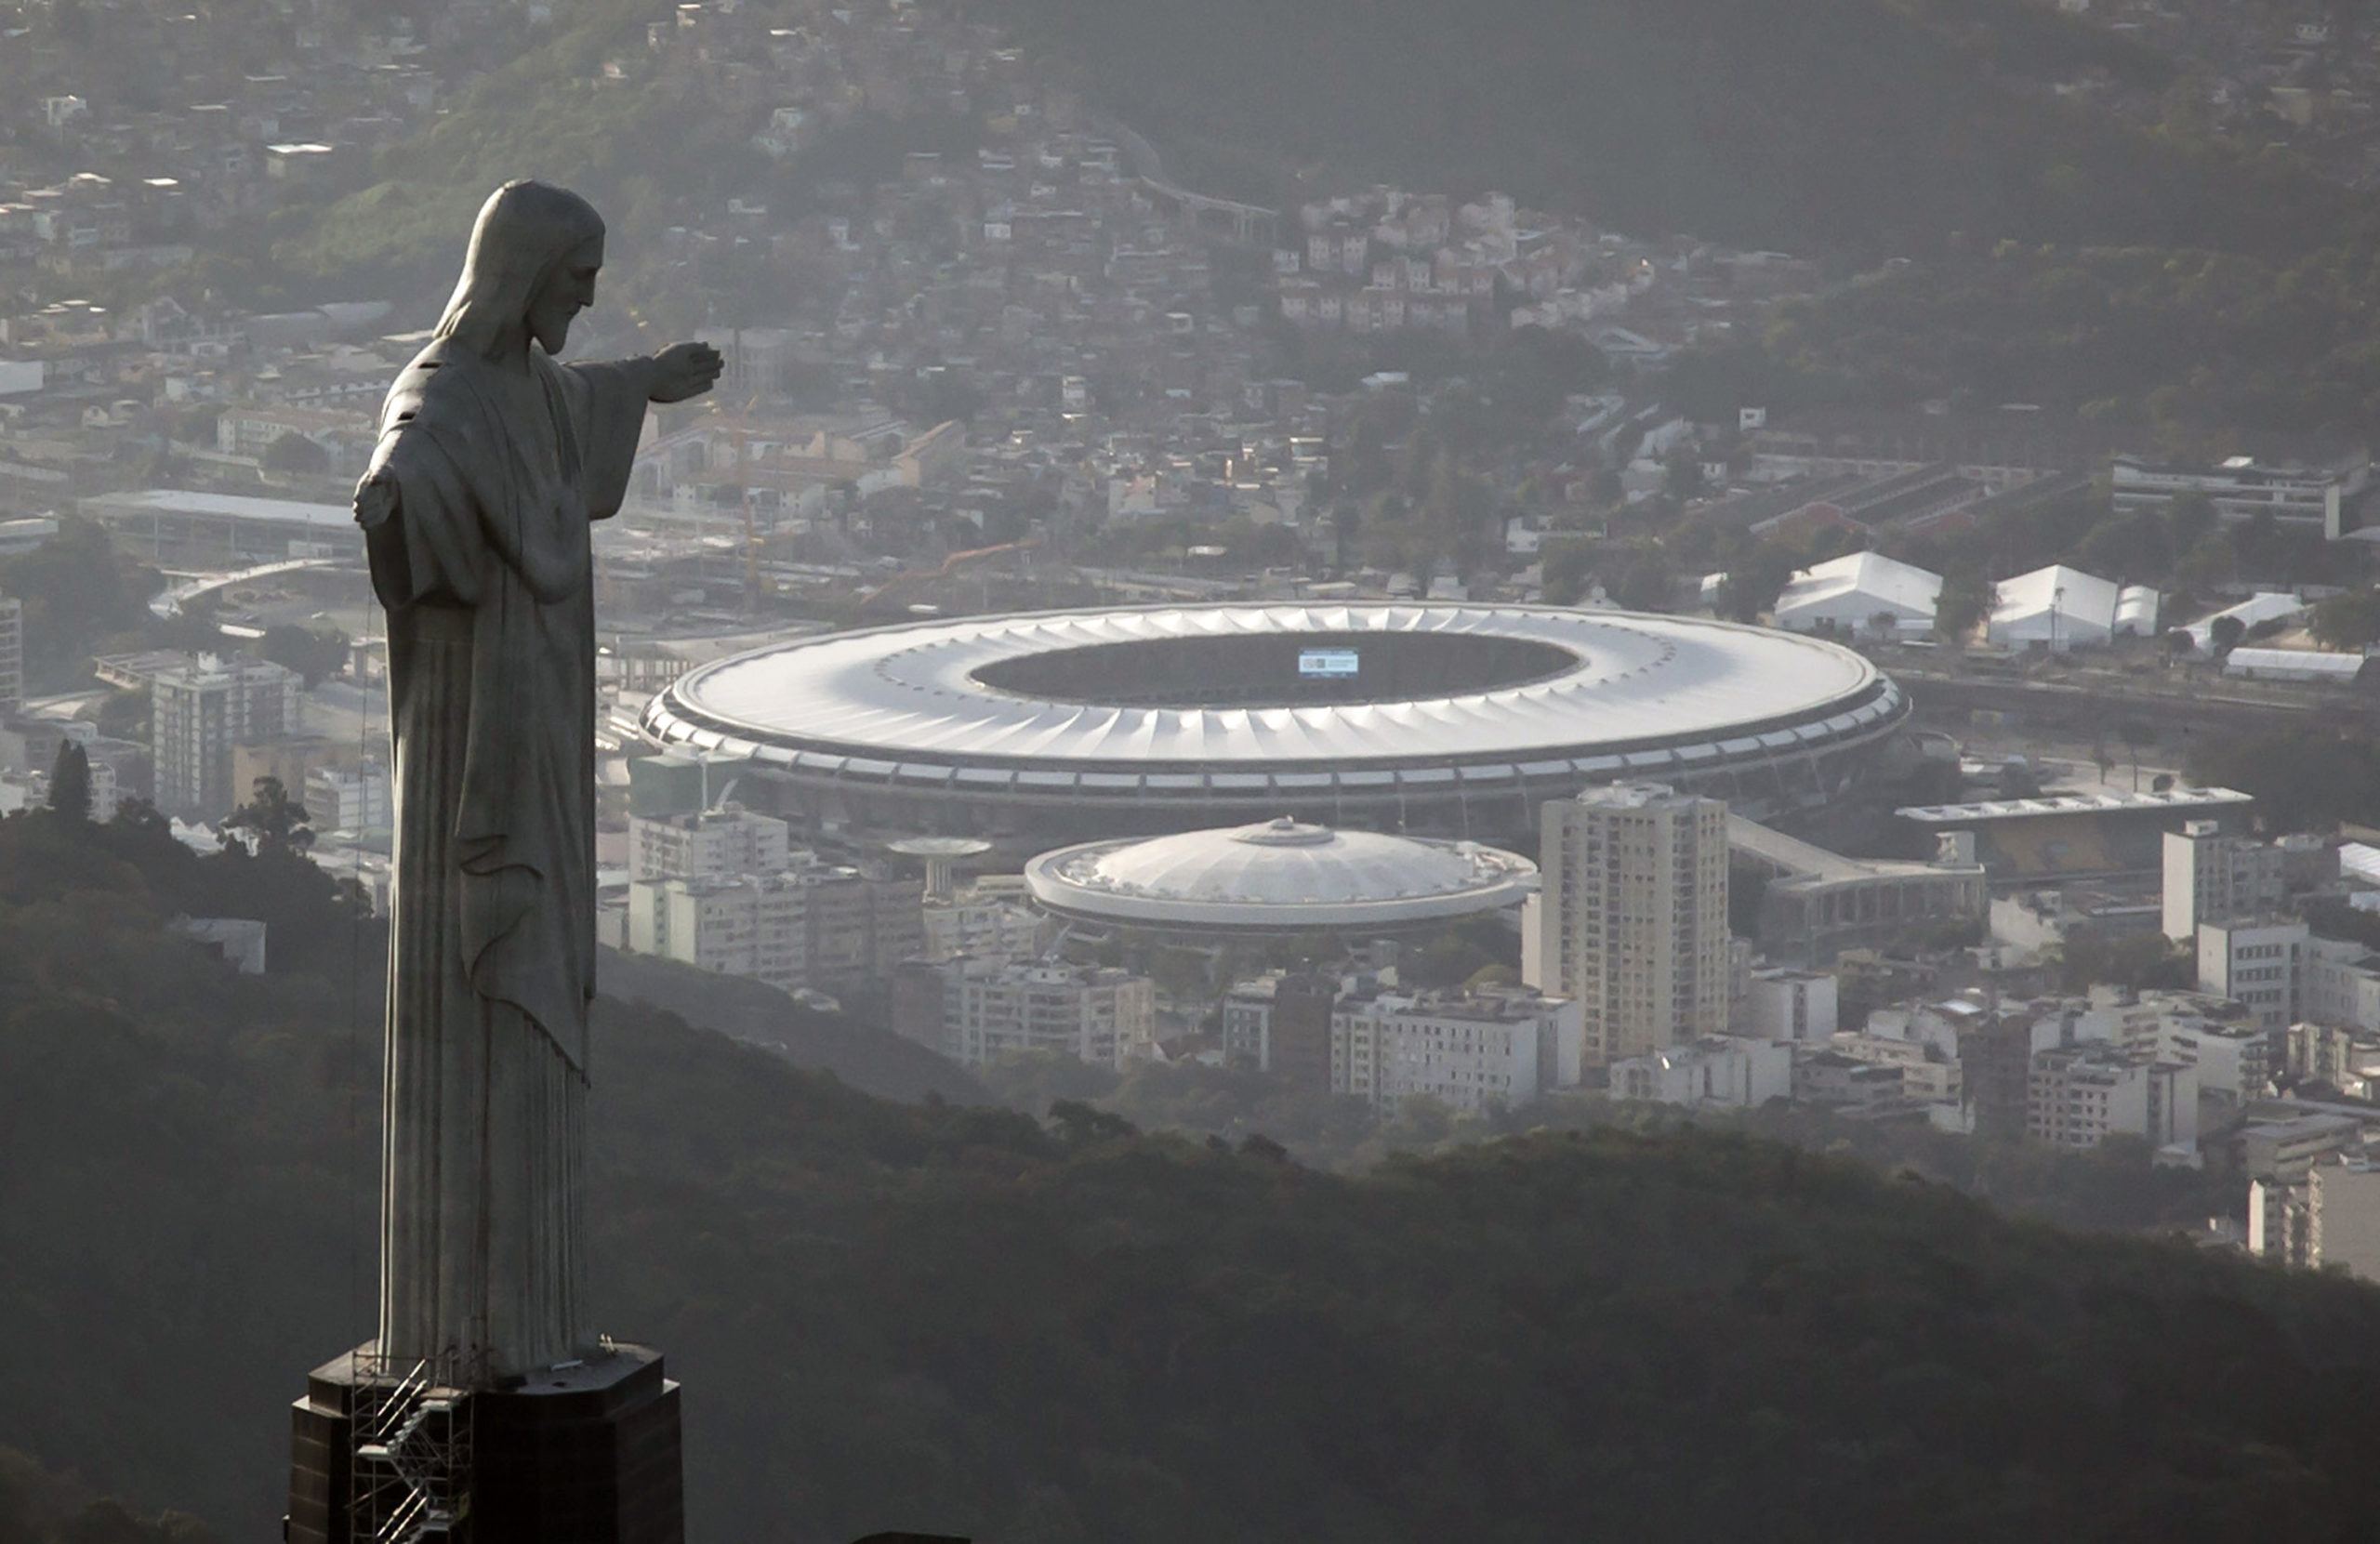 Tohtoročný juhoamerický šampionát Copa América sa napokon bude hrať v Brazílii - Webnoviny.sk